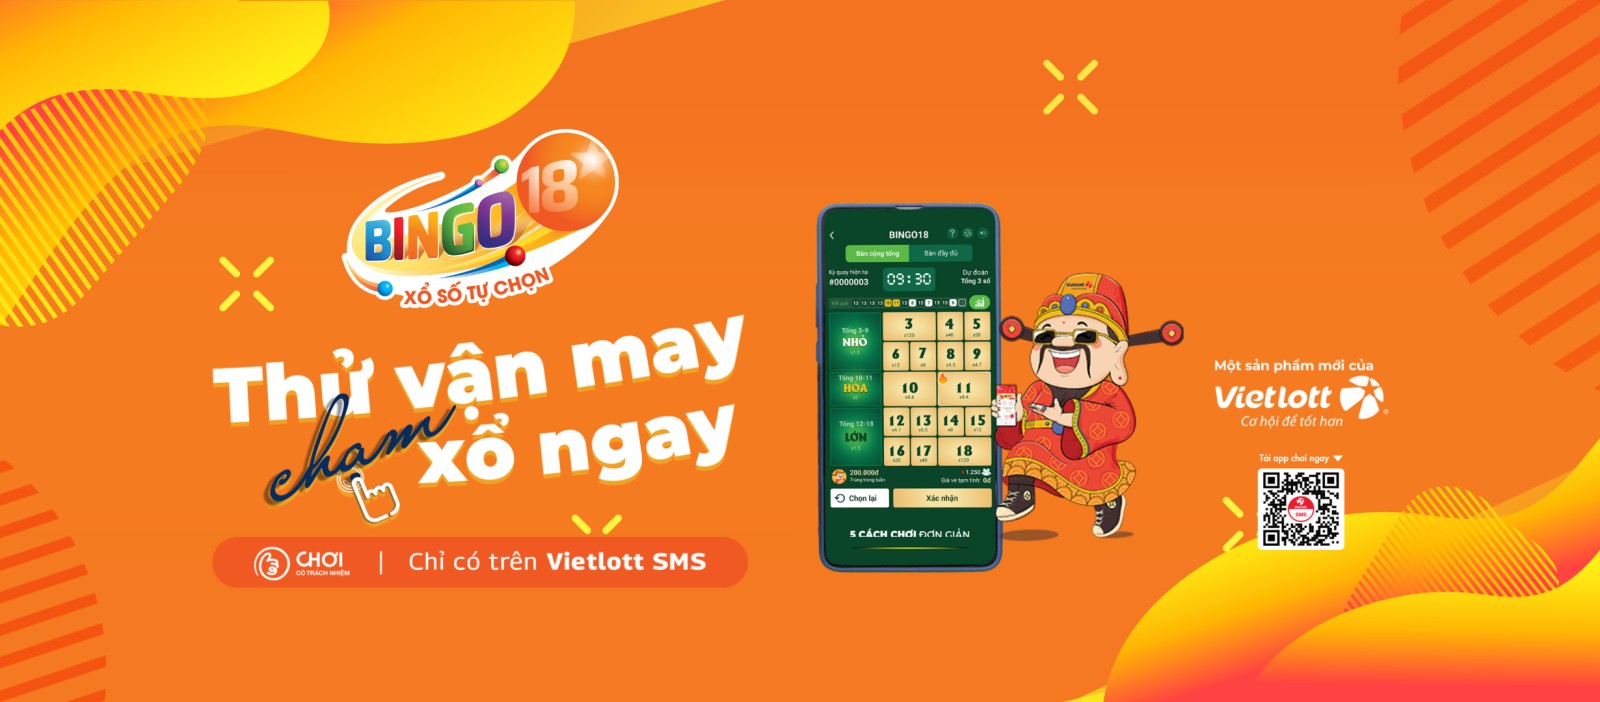 Vietlott phát hành xổ số quay nhanh trên điện thoại Bingo18 - 1